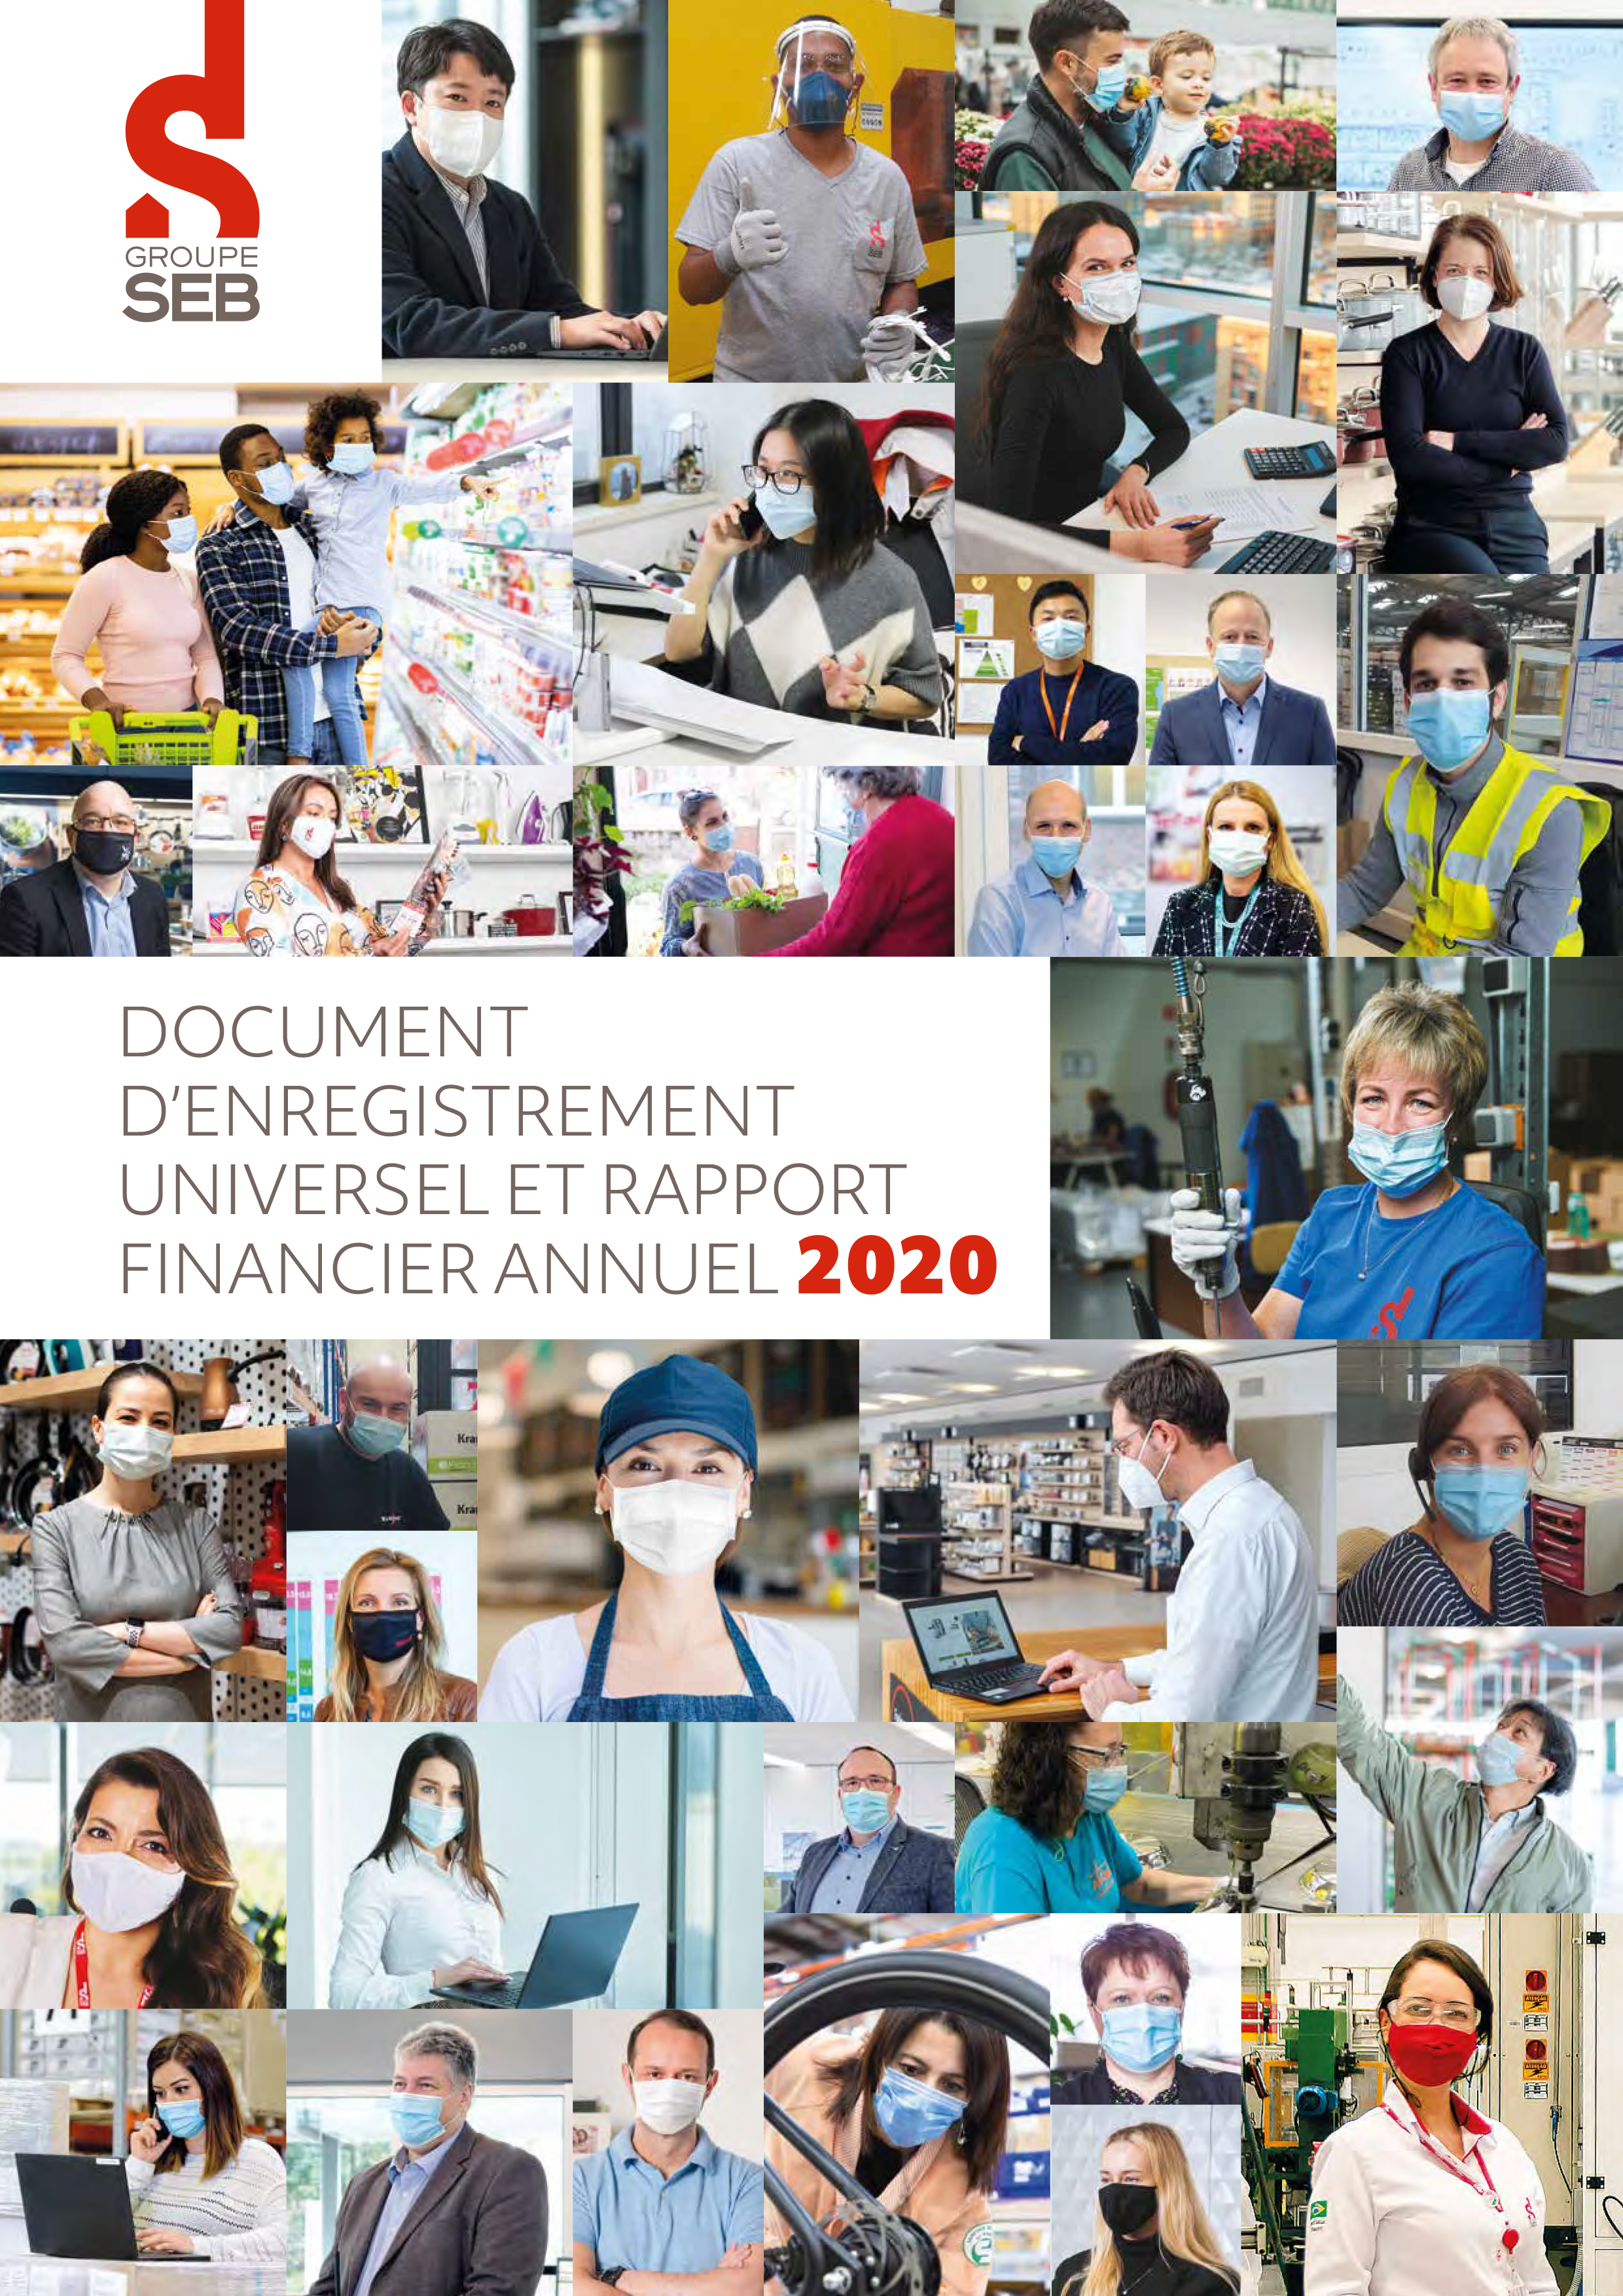 Front cover of Document d'enregistrement universel et rapport financier annuel 2020